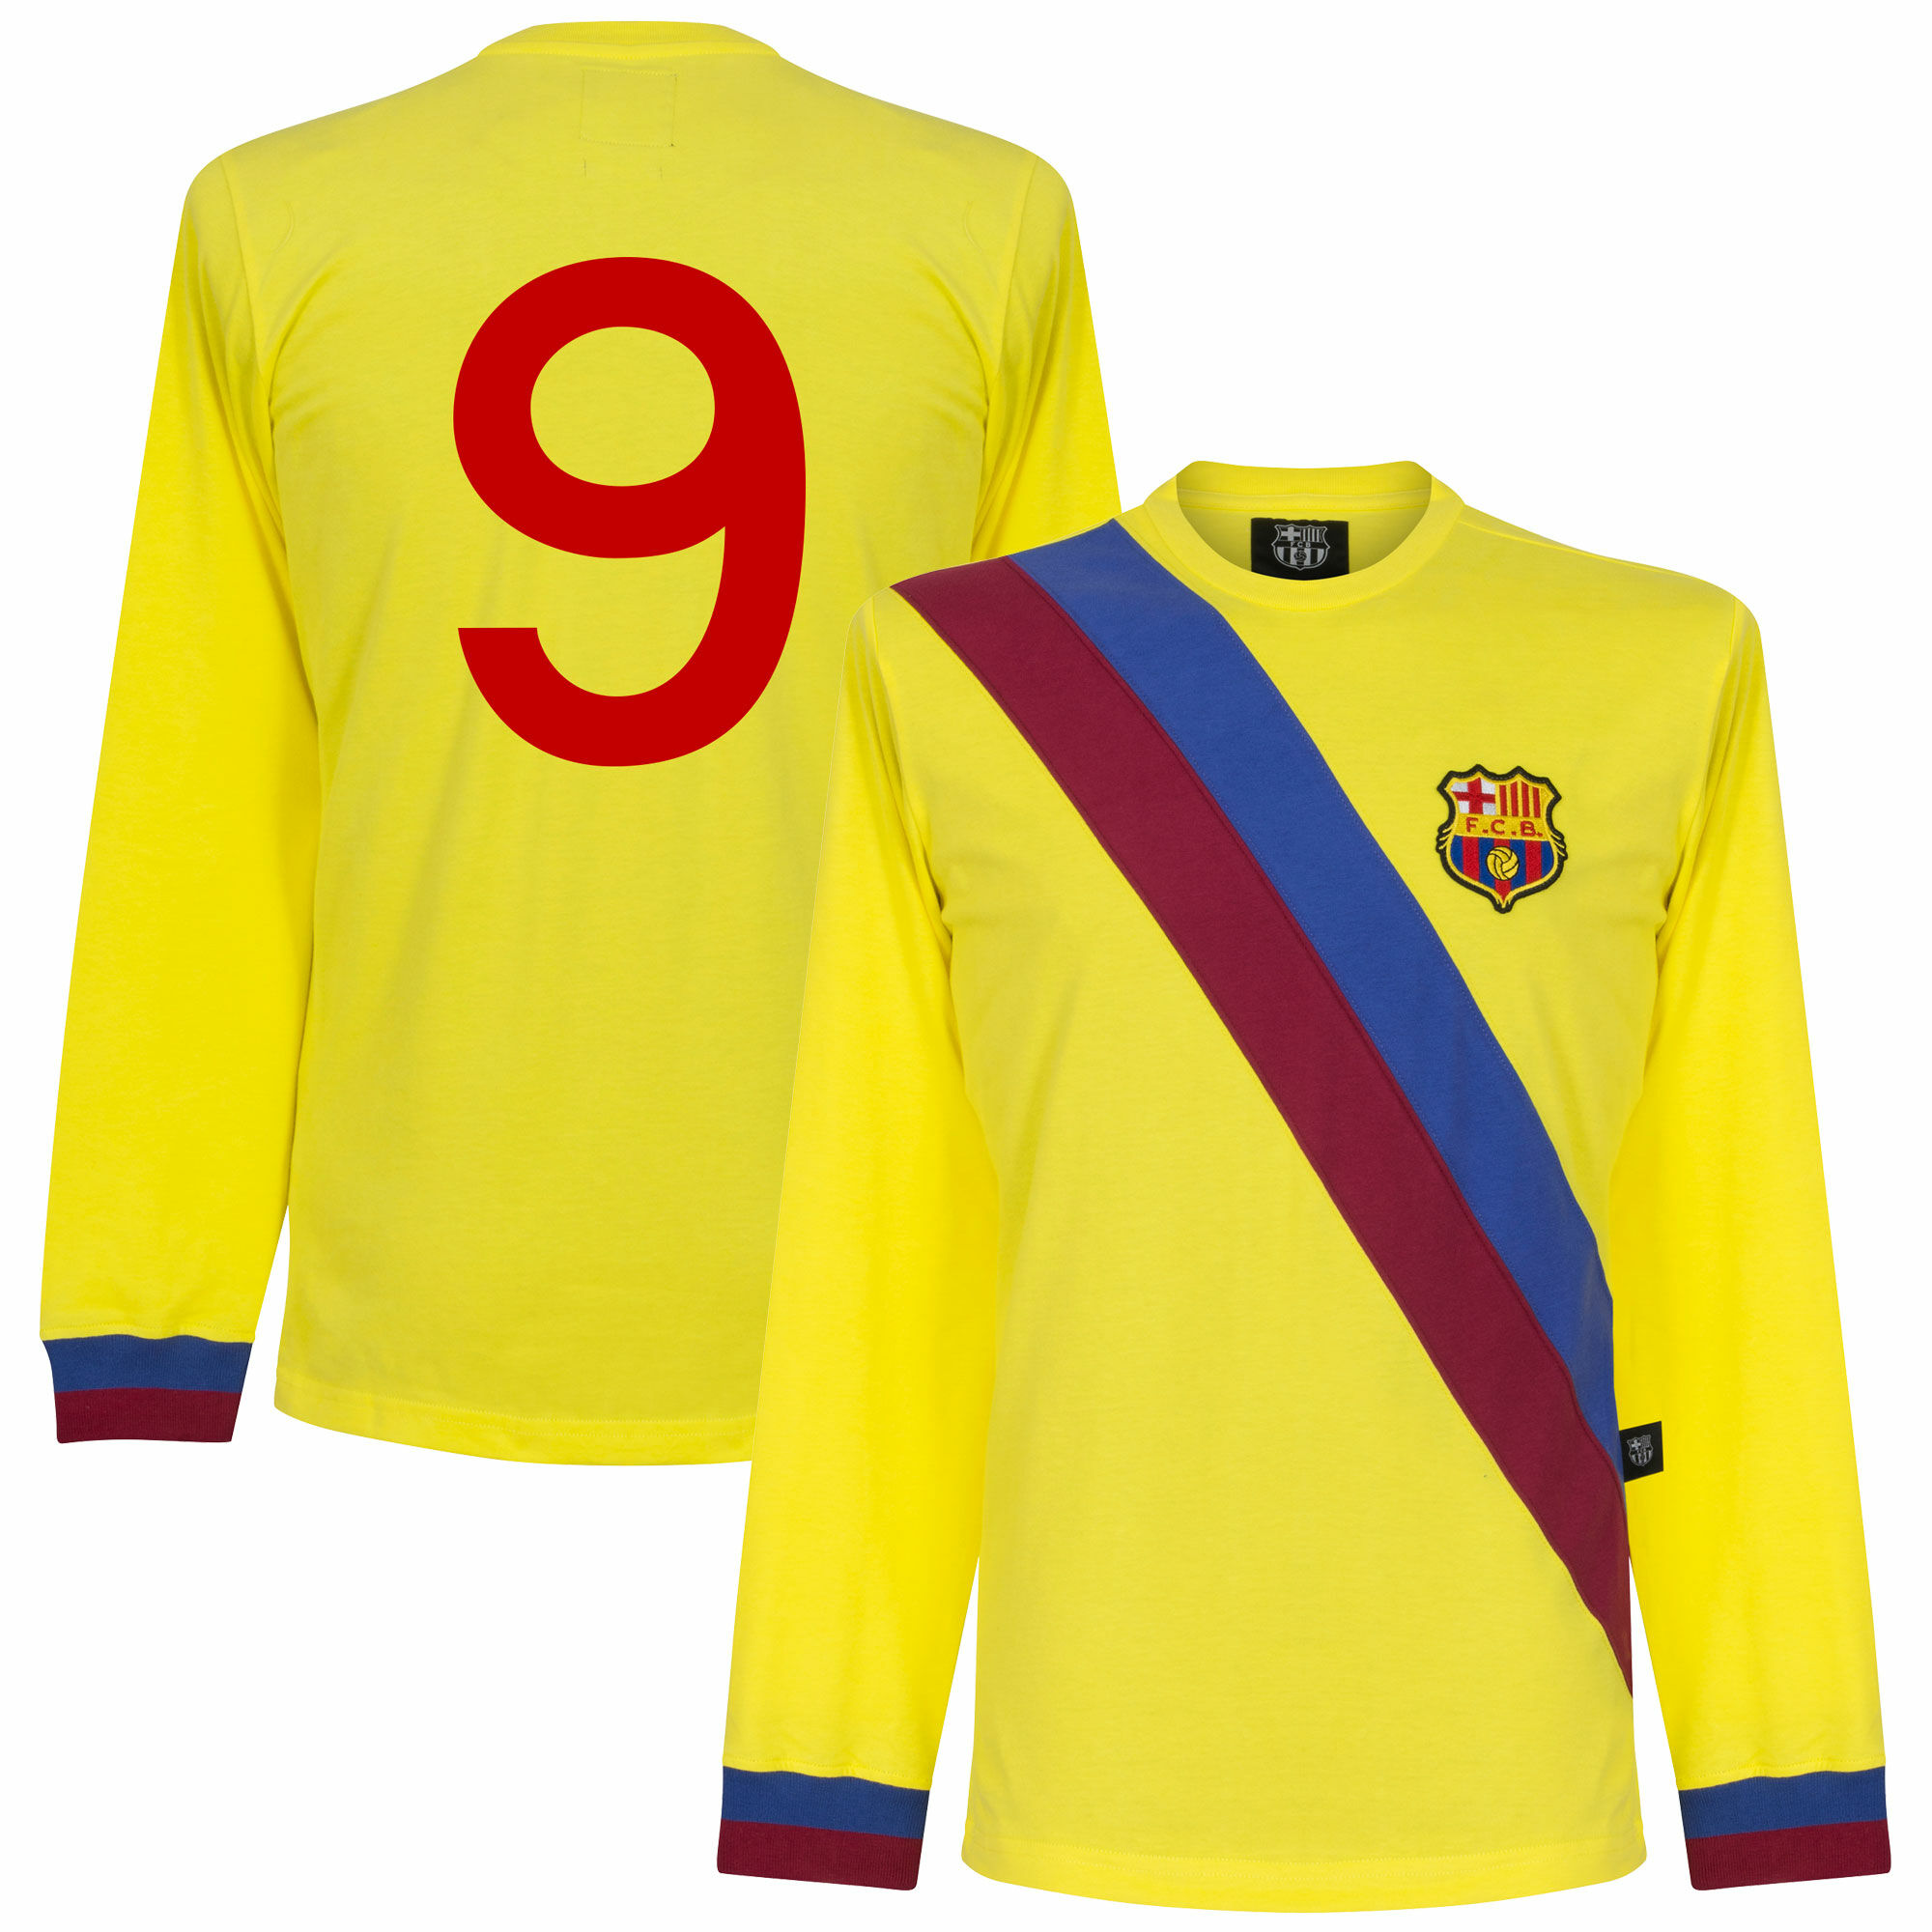 Barcelona - Dres fotbalový - retro potisk z plsti, retrostyl, dlouhý rukáv, žlutý, číslo 9, sezóna 1974/75, venkovní